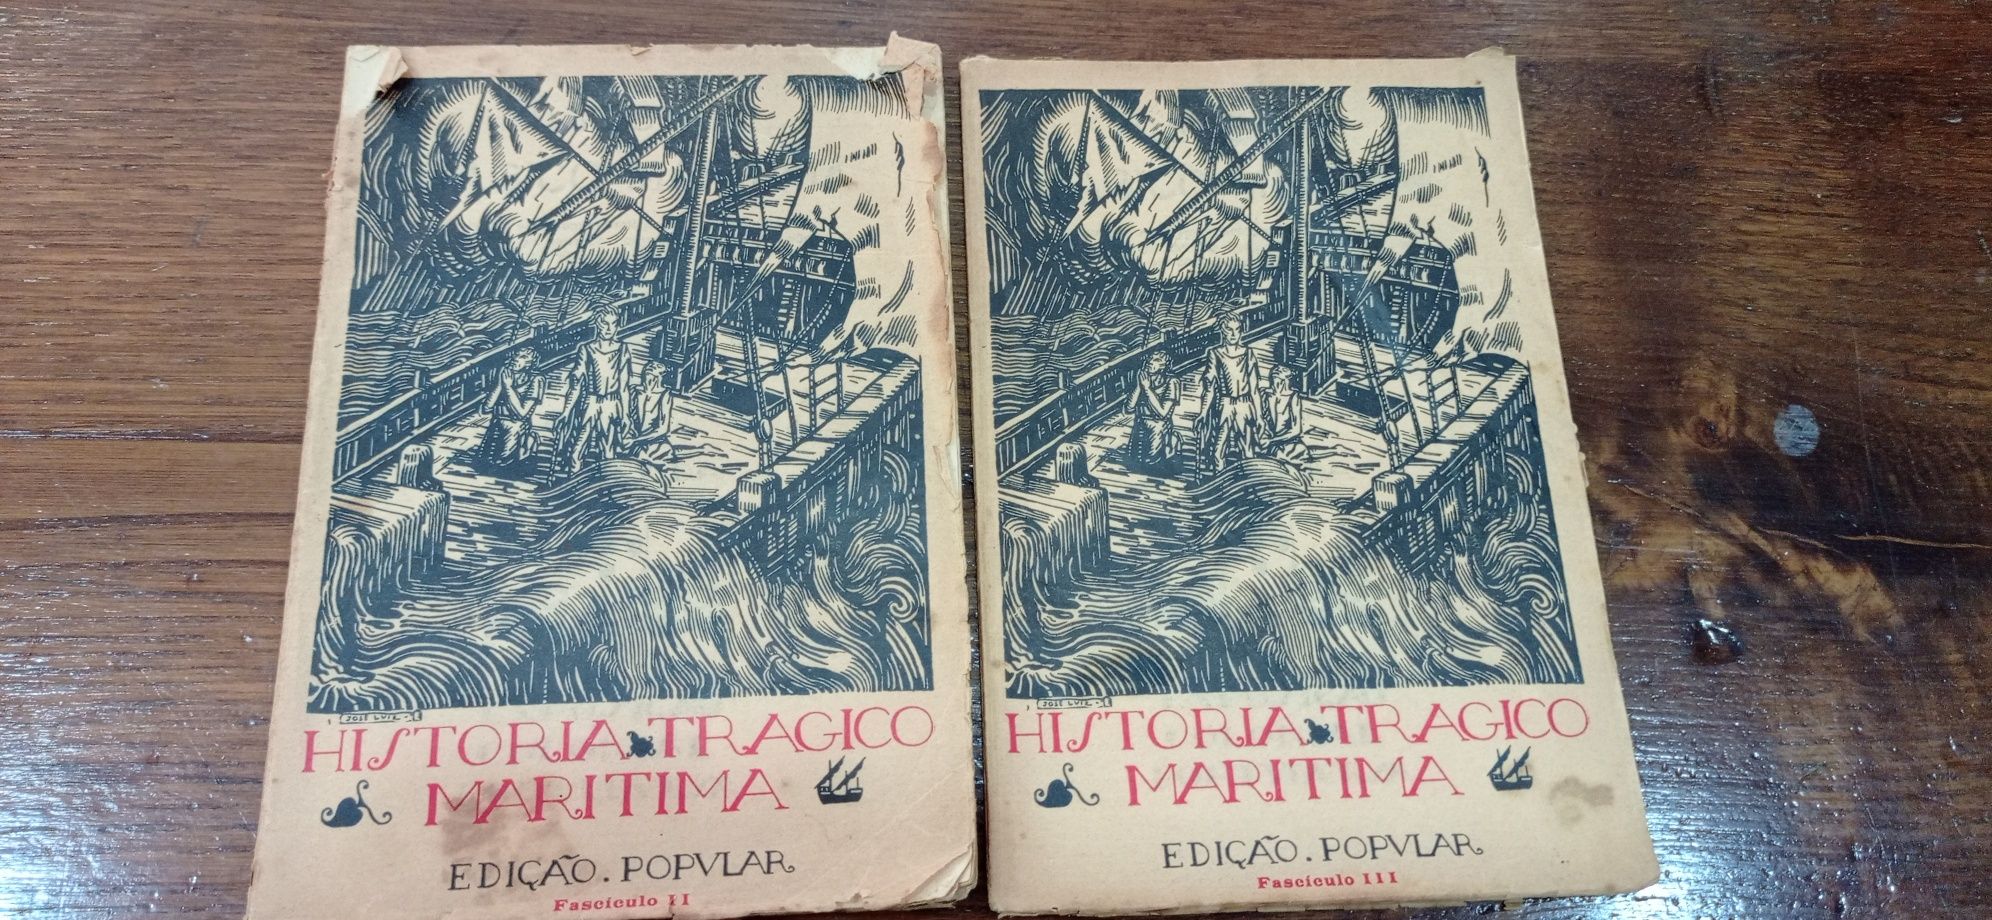 Livro antigo História trágico marítima de 1934